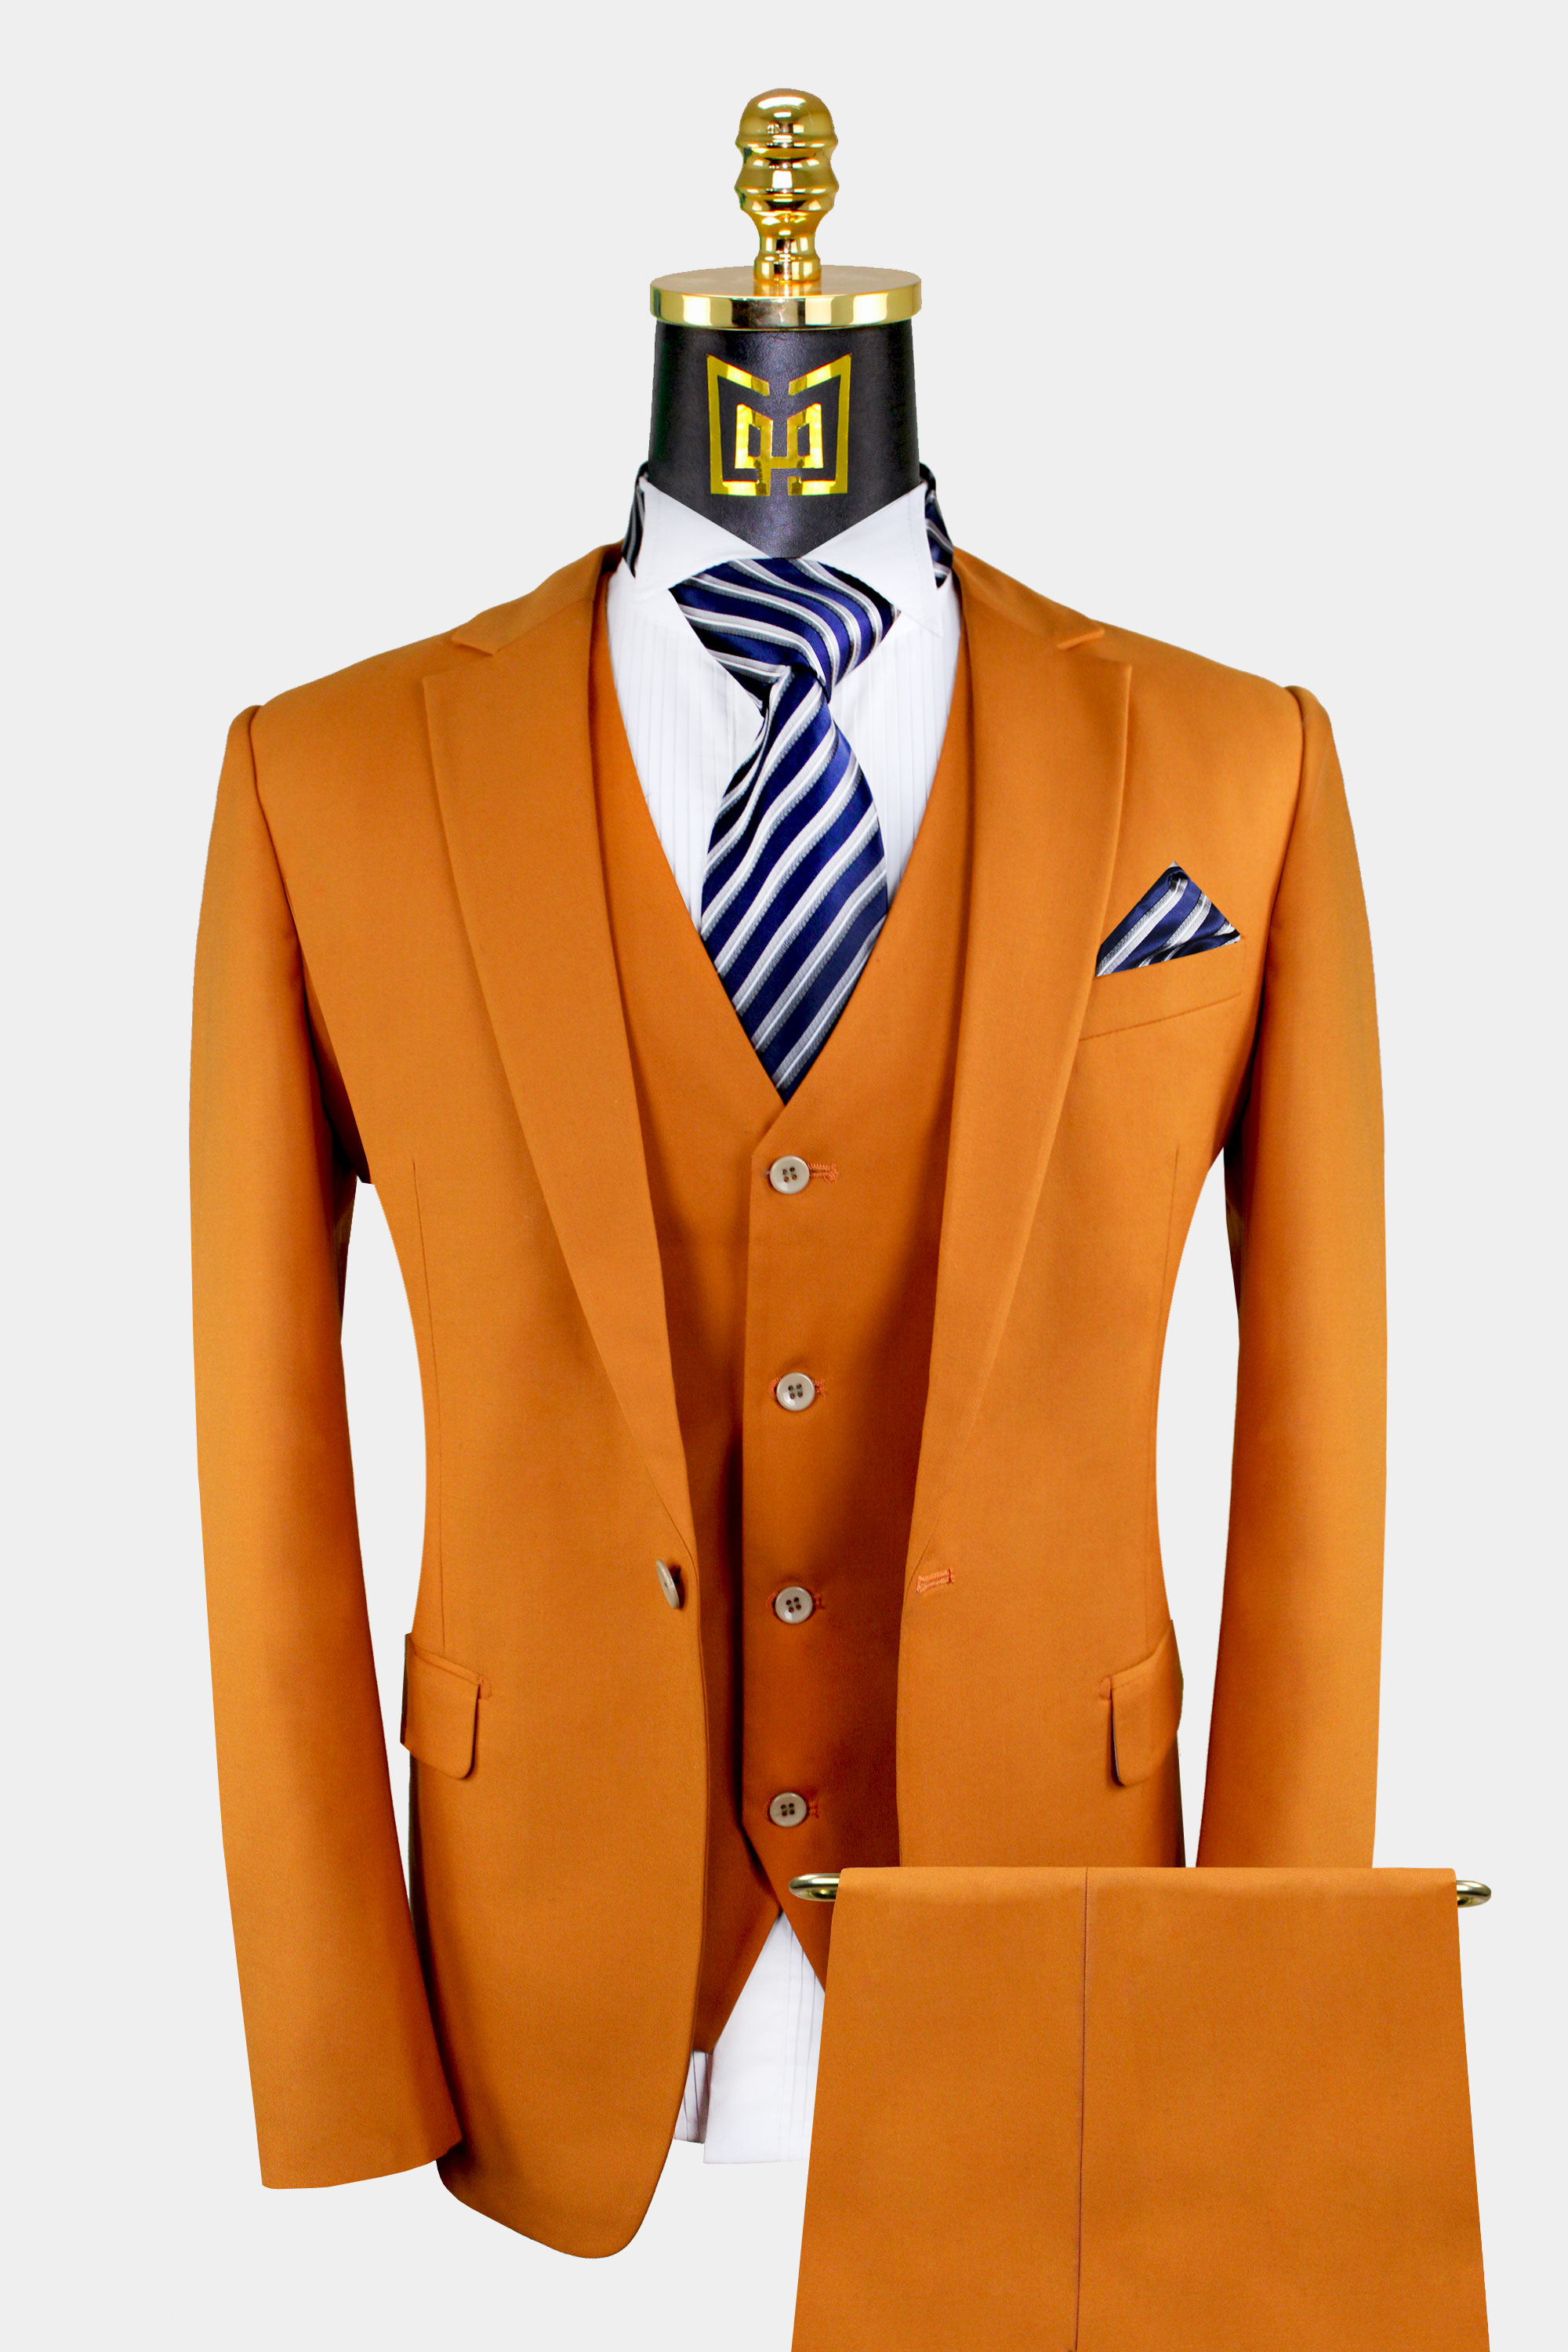 Gentle-Men Suits Khaki 3 Pieces Formal Business Men Suit Set